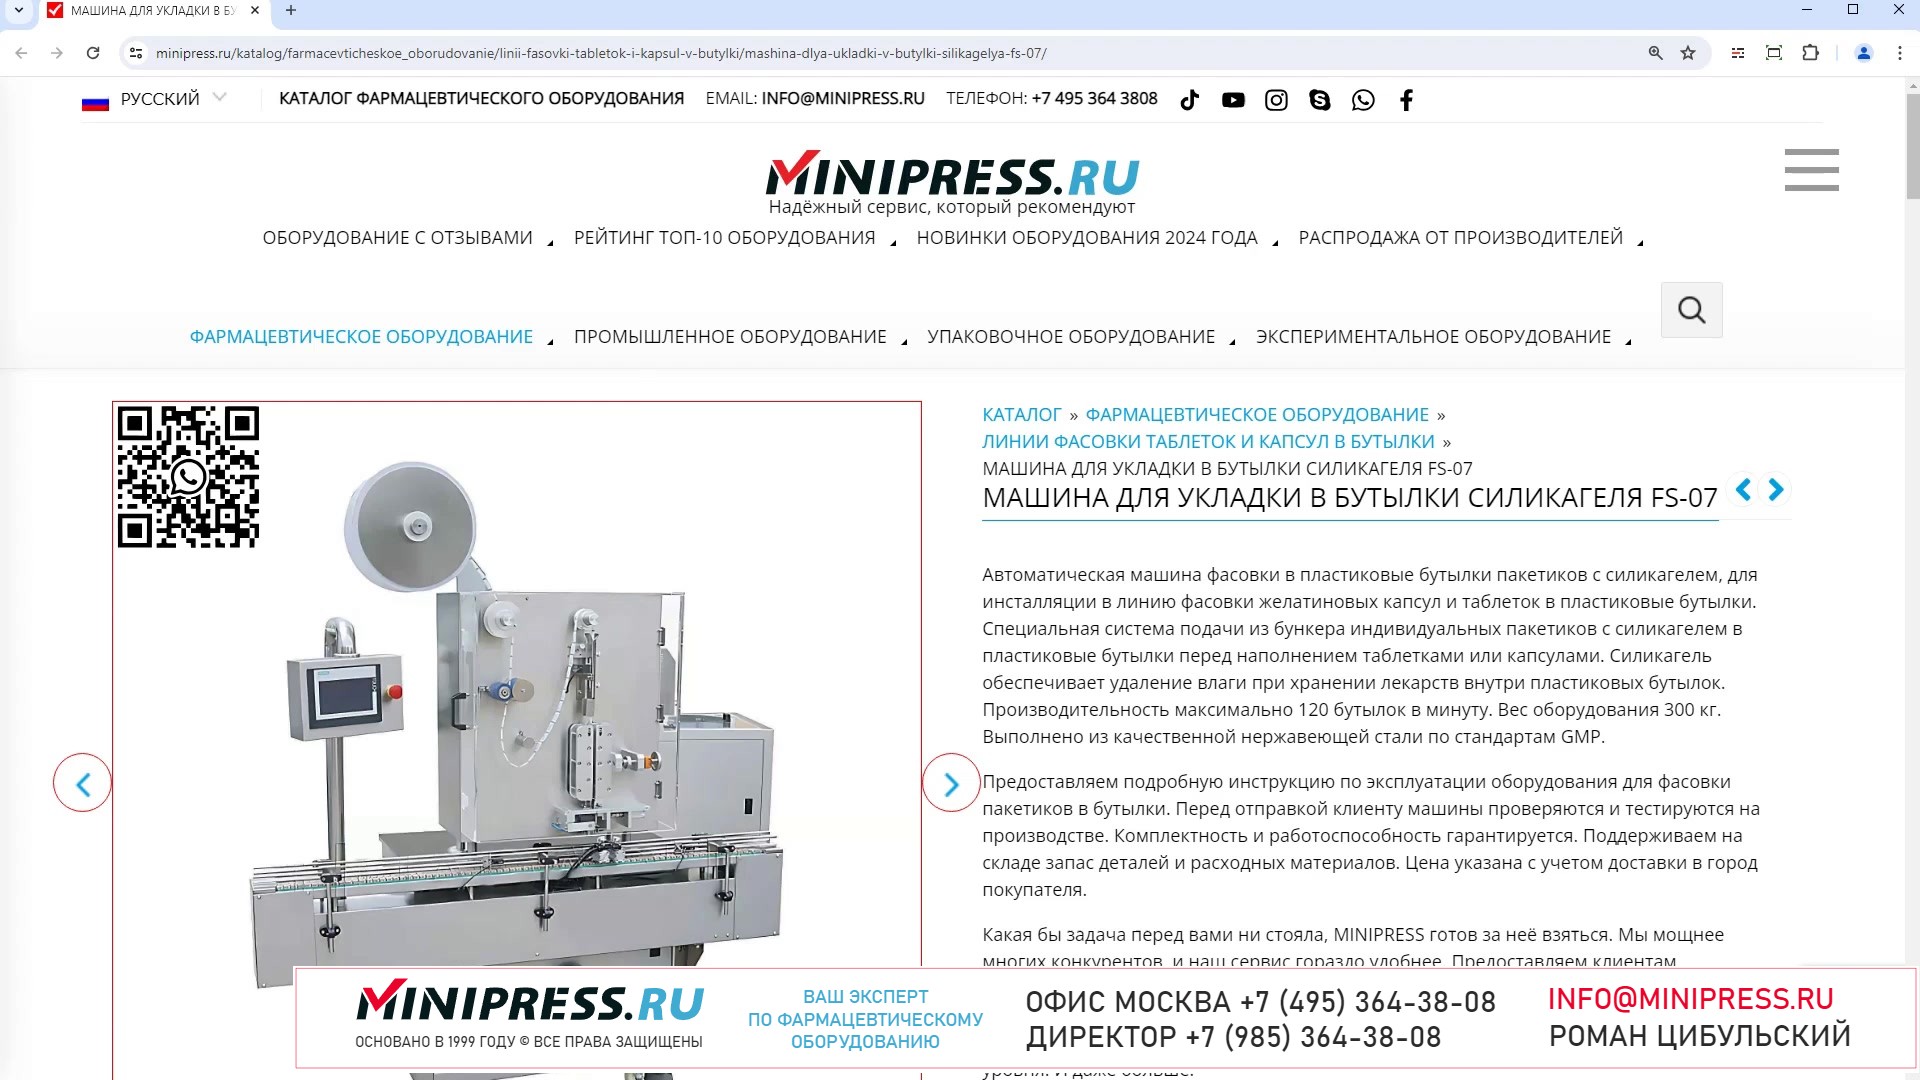 Minipress.ru Машина для укладки в бутылки силикагеля FS-07